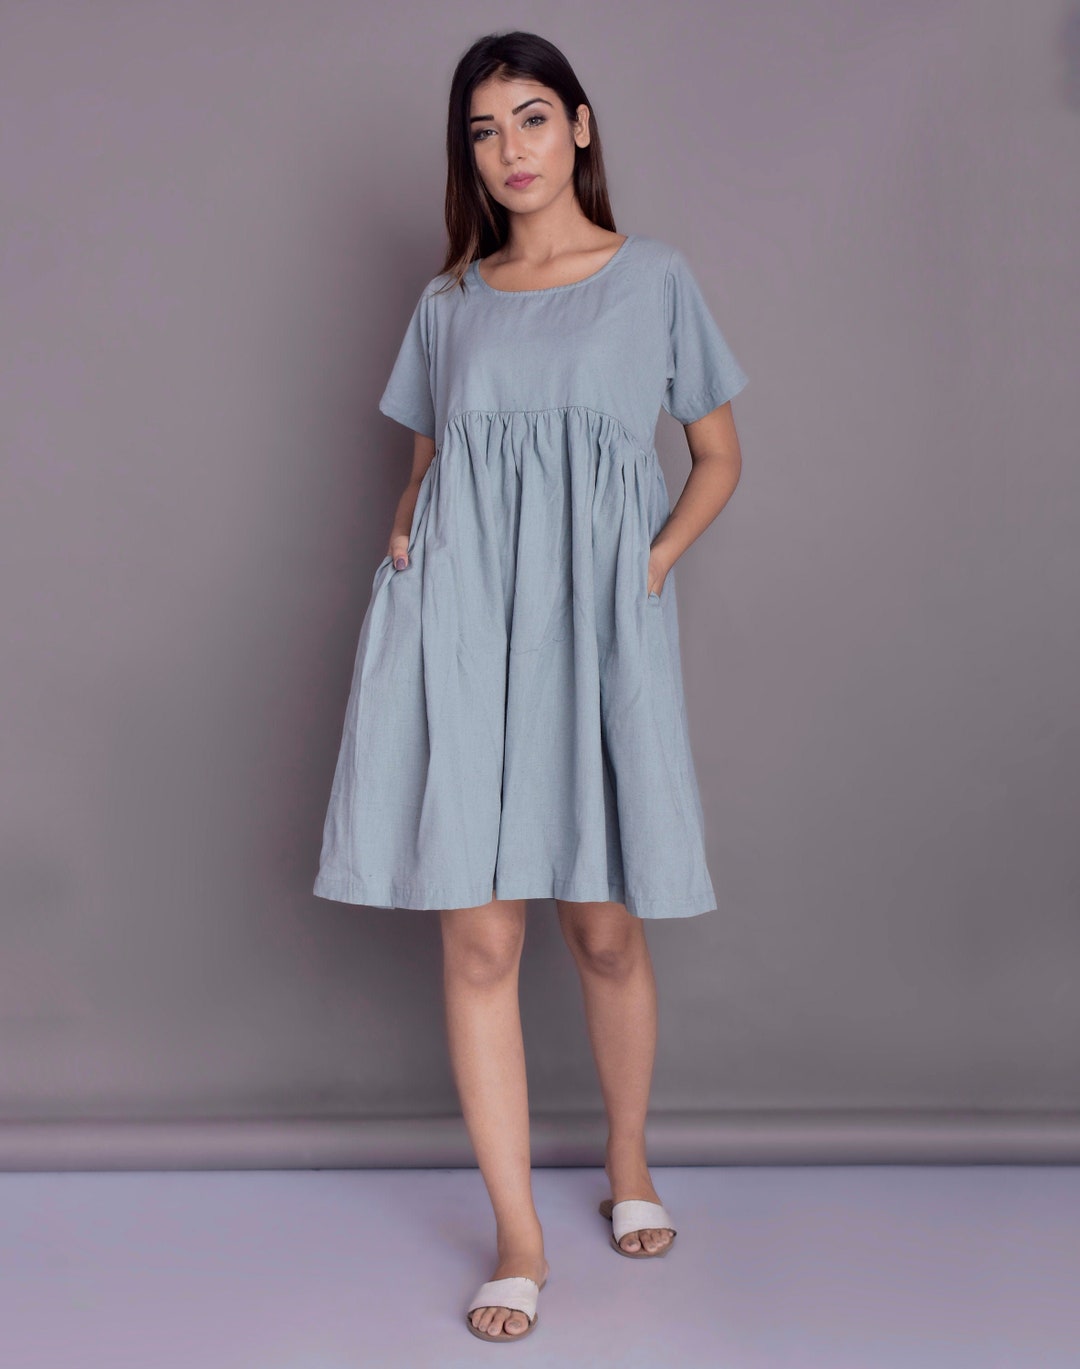 Empire Waist Linen Dress, Summer Dress, Short Sleeved Dress, Knee Length  Linen Dress With Pockets Custom Made by Modernmoveboutiique 